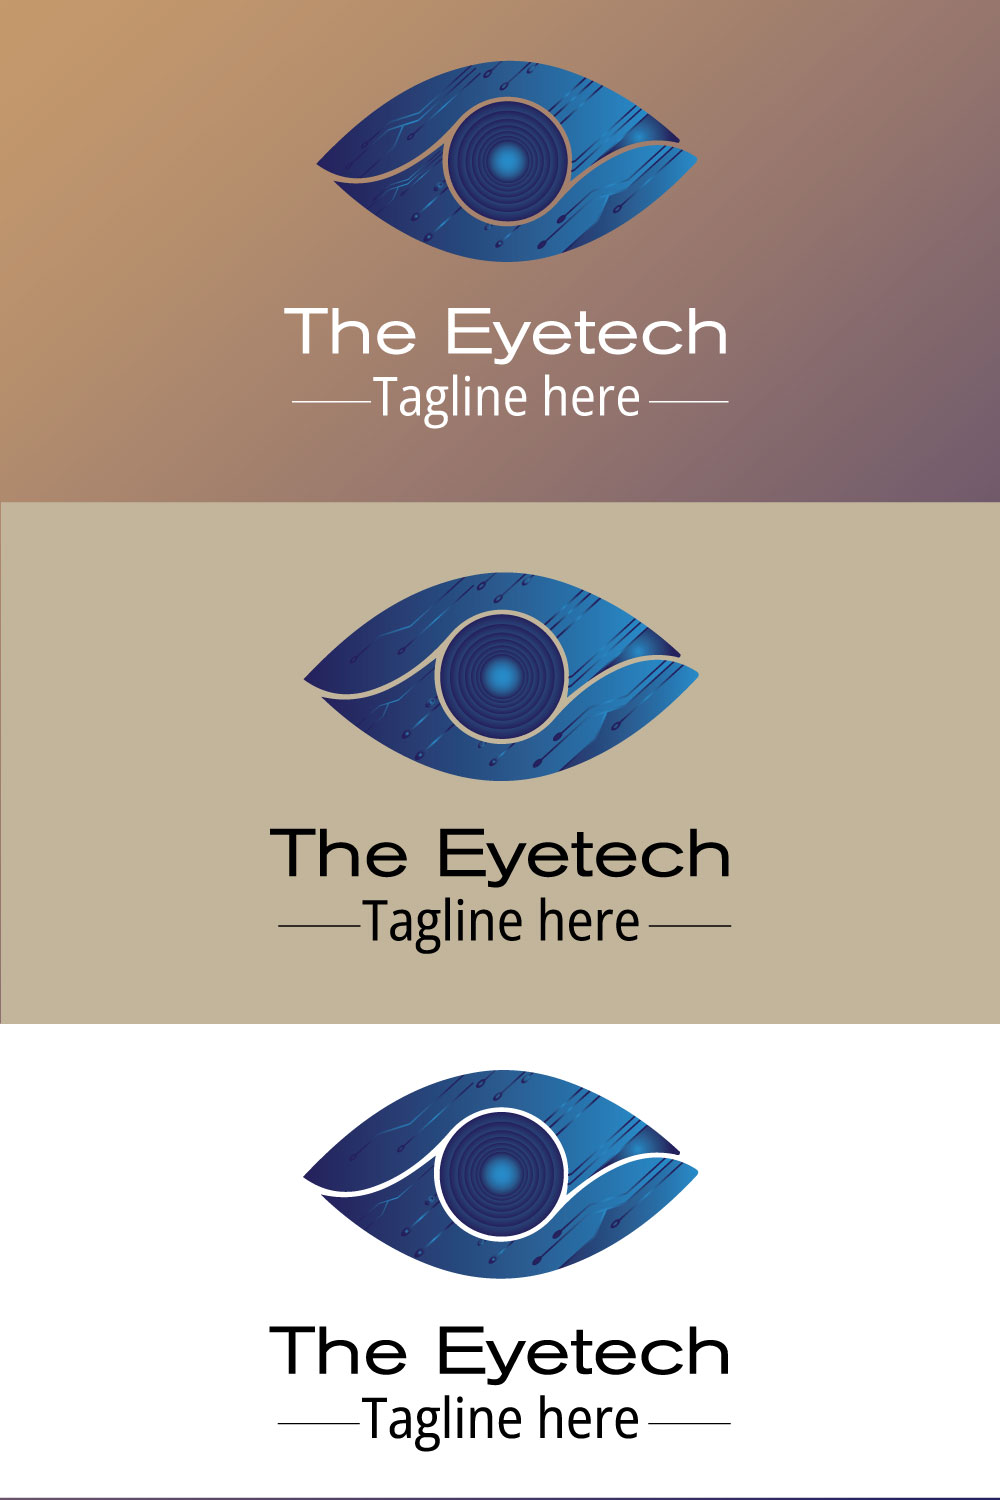 The eye buisness logo (tech logo) pinterest preview image.